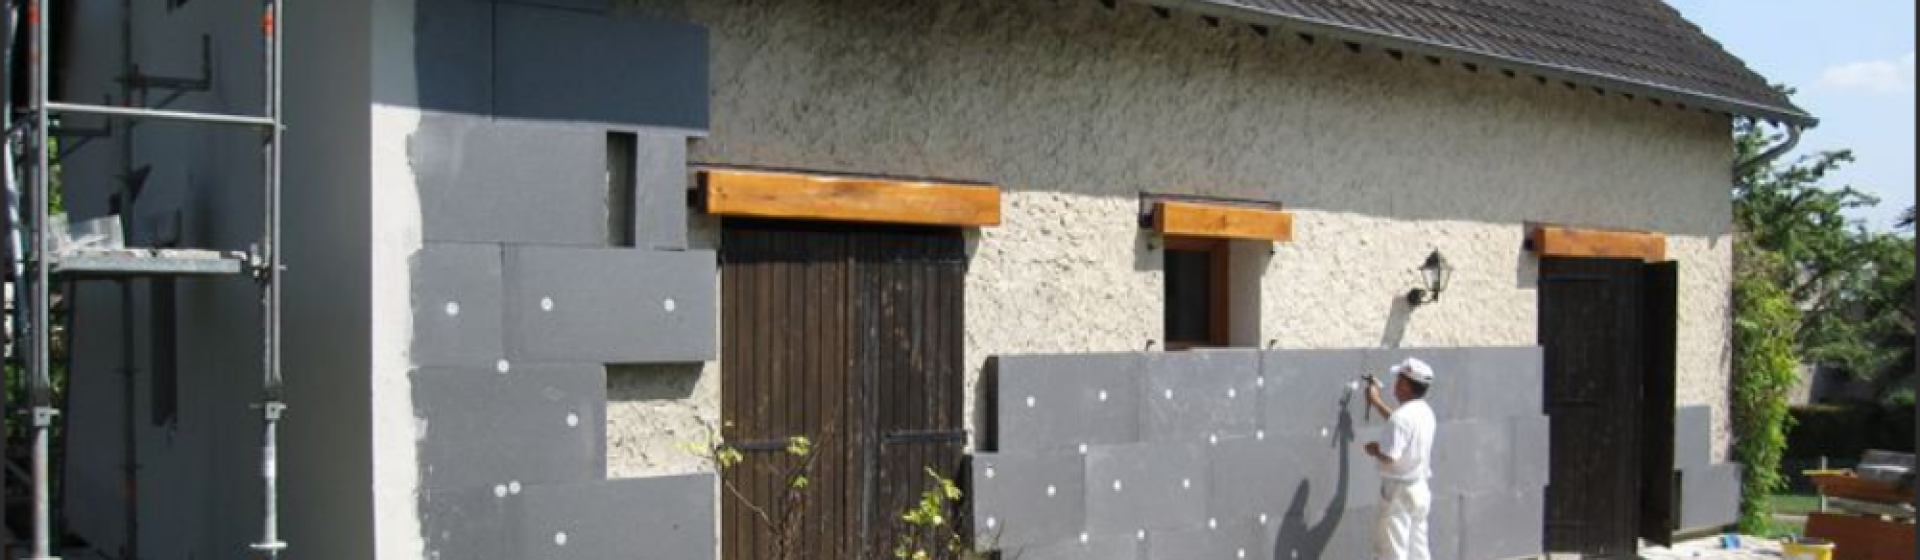 Service de rénovation de façades à Montauban – Sarl Gabor Fils Façades